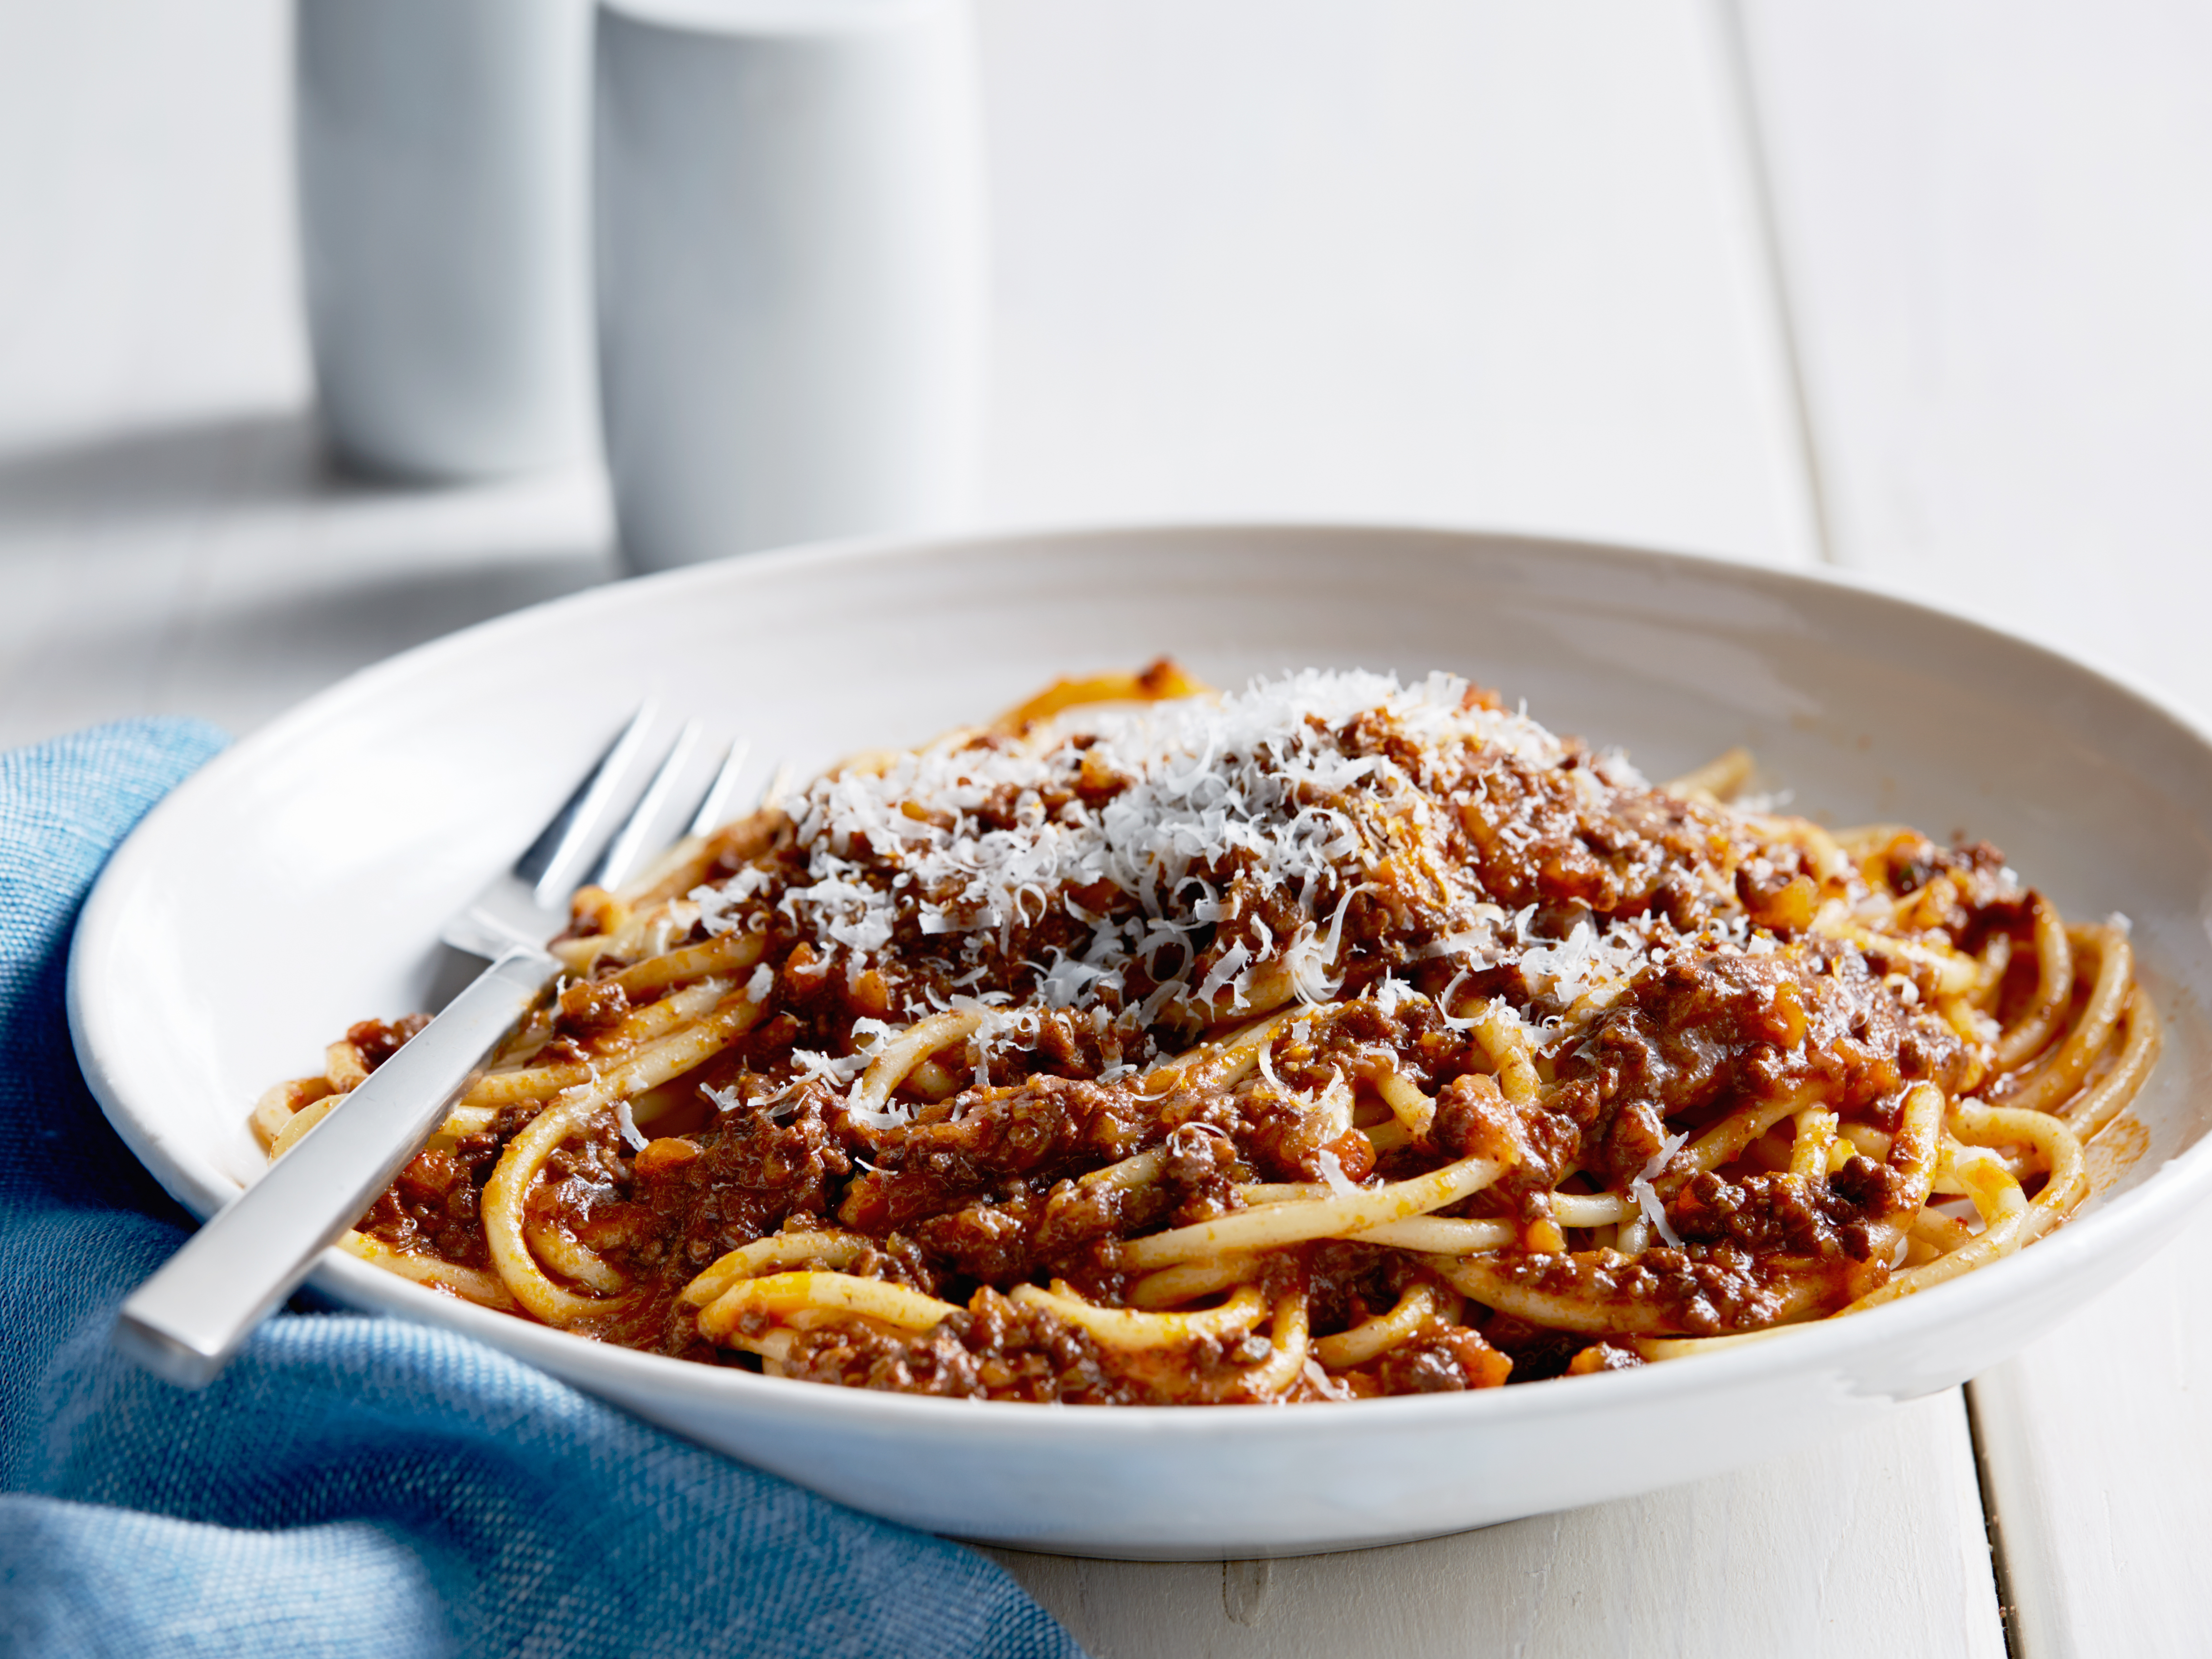 Spaghetti ala boloñesa